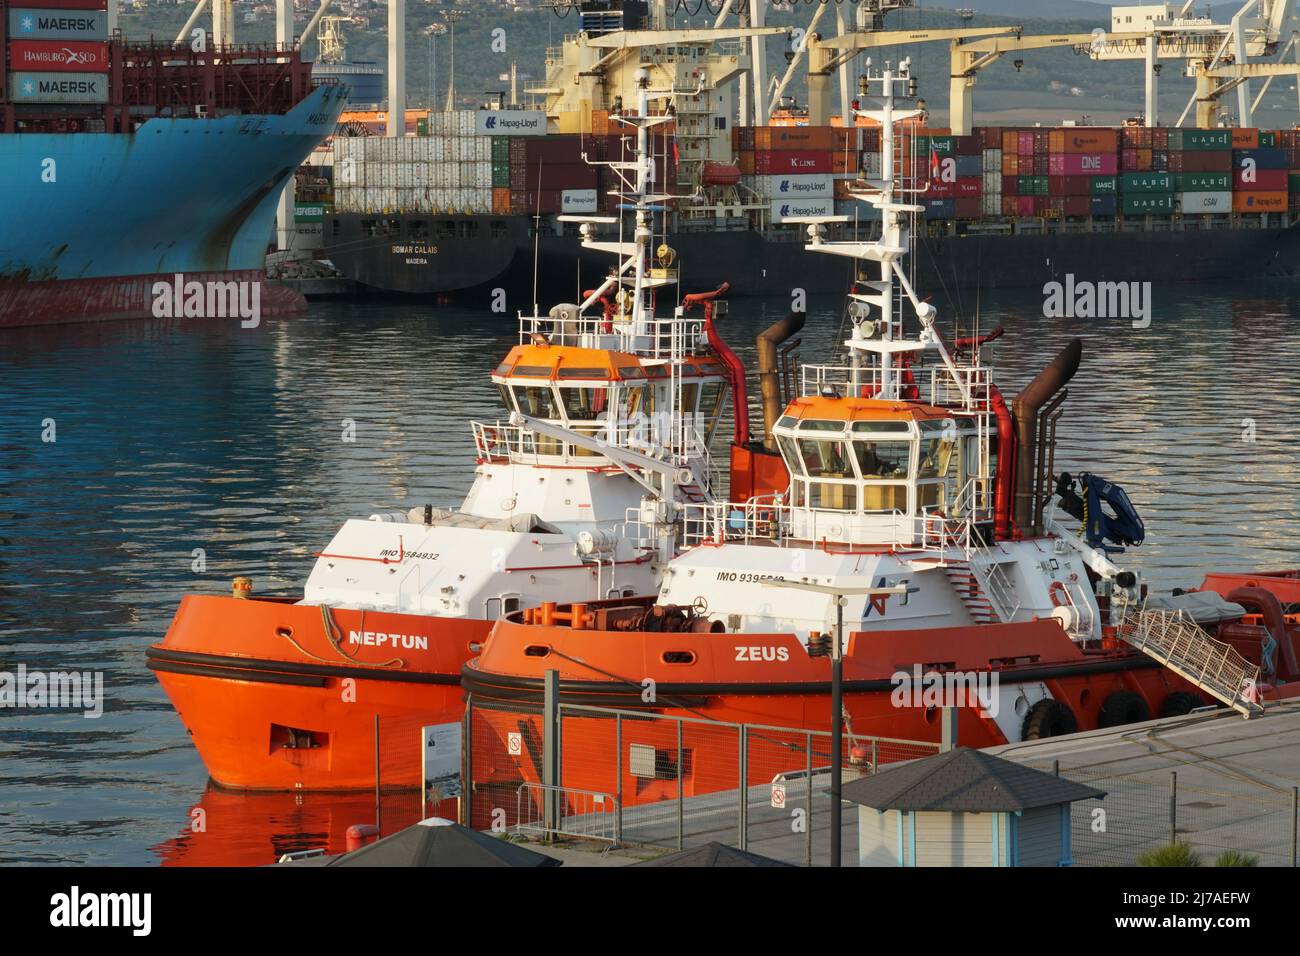 Due rimorchiatori con scafo arancione ormeggiati nel porto di Capodistria, Slovenia. Sullo sfondo sono presenti due contenitori in funzione cargo con gru a portale. Foto Stock